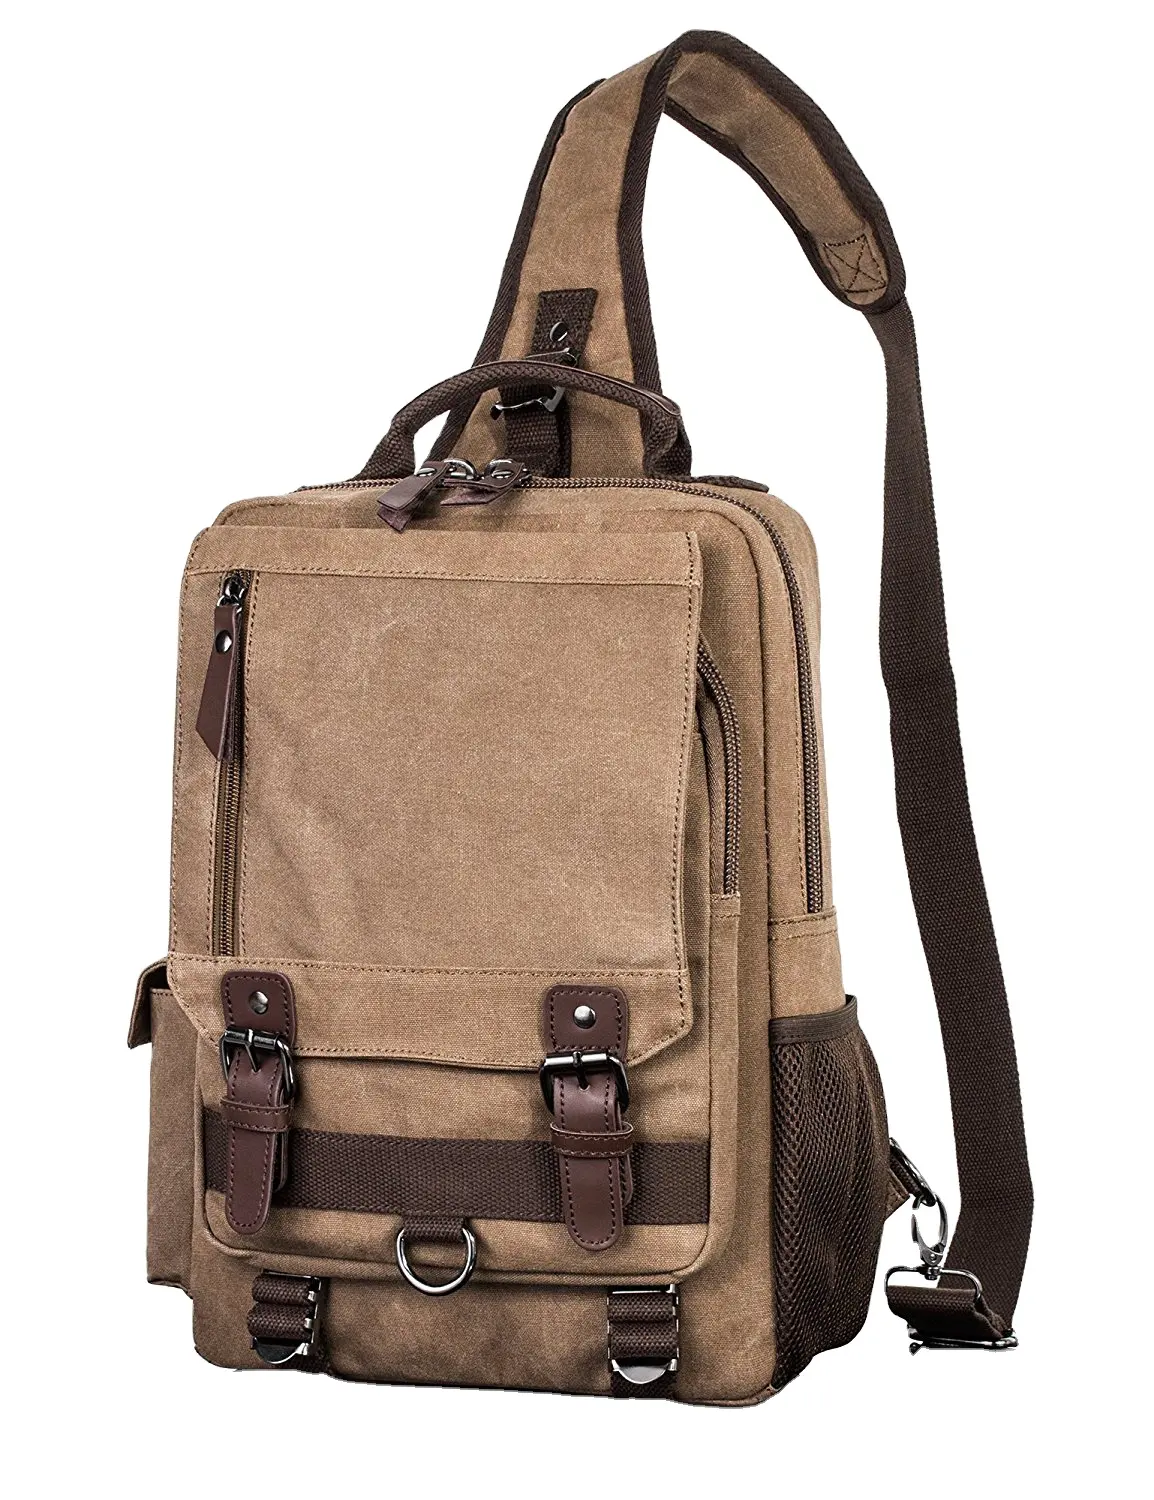 ฟรีตัวอย่างเดินป่าผู้หญิงกระเป๋าสะพายลําลอง Daypacks กระเป๋าเป้สะพายหลังผู้ชายยุทธวิธีสลิงกระเป๋าผ้าใบกระเป๋า